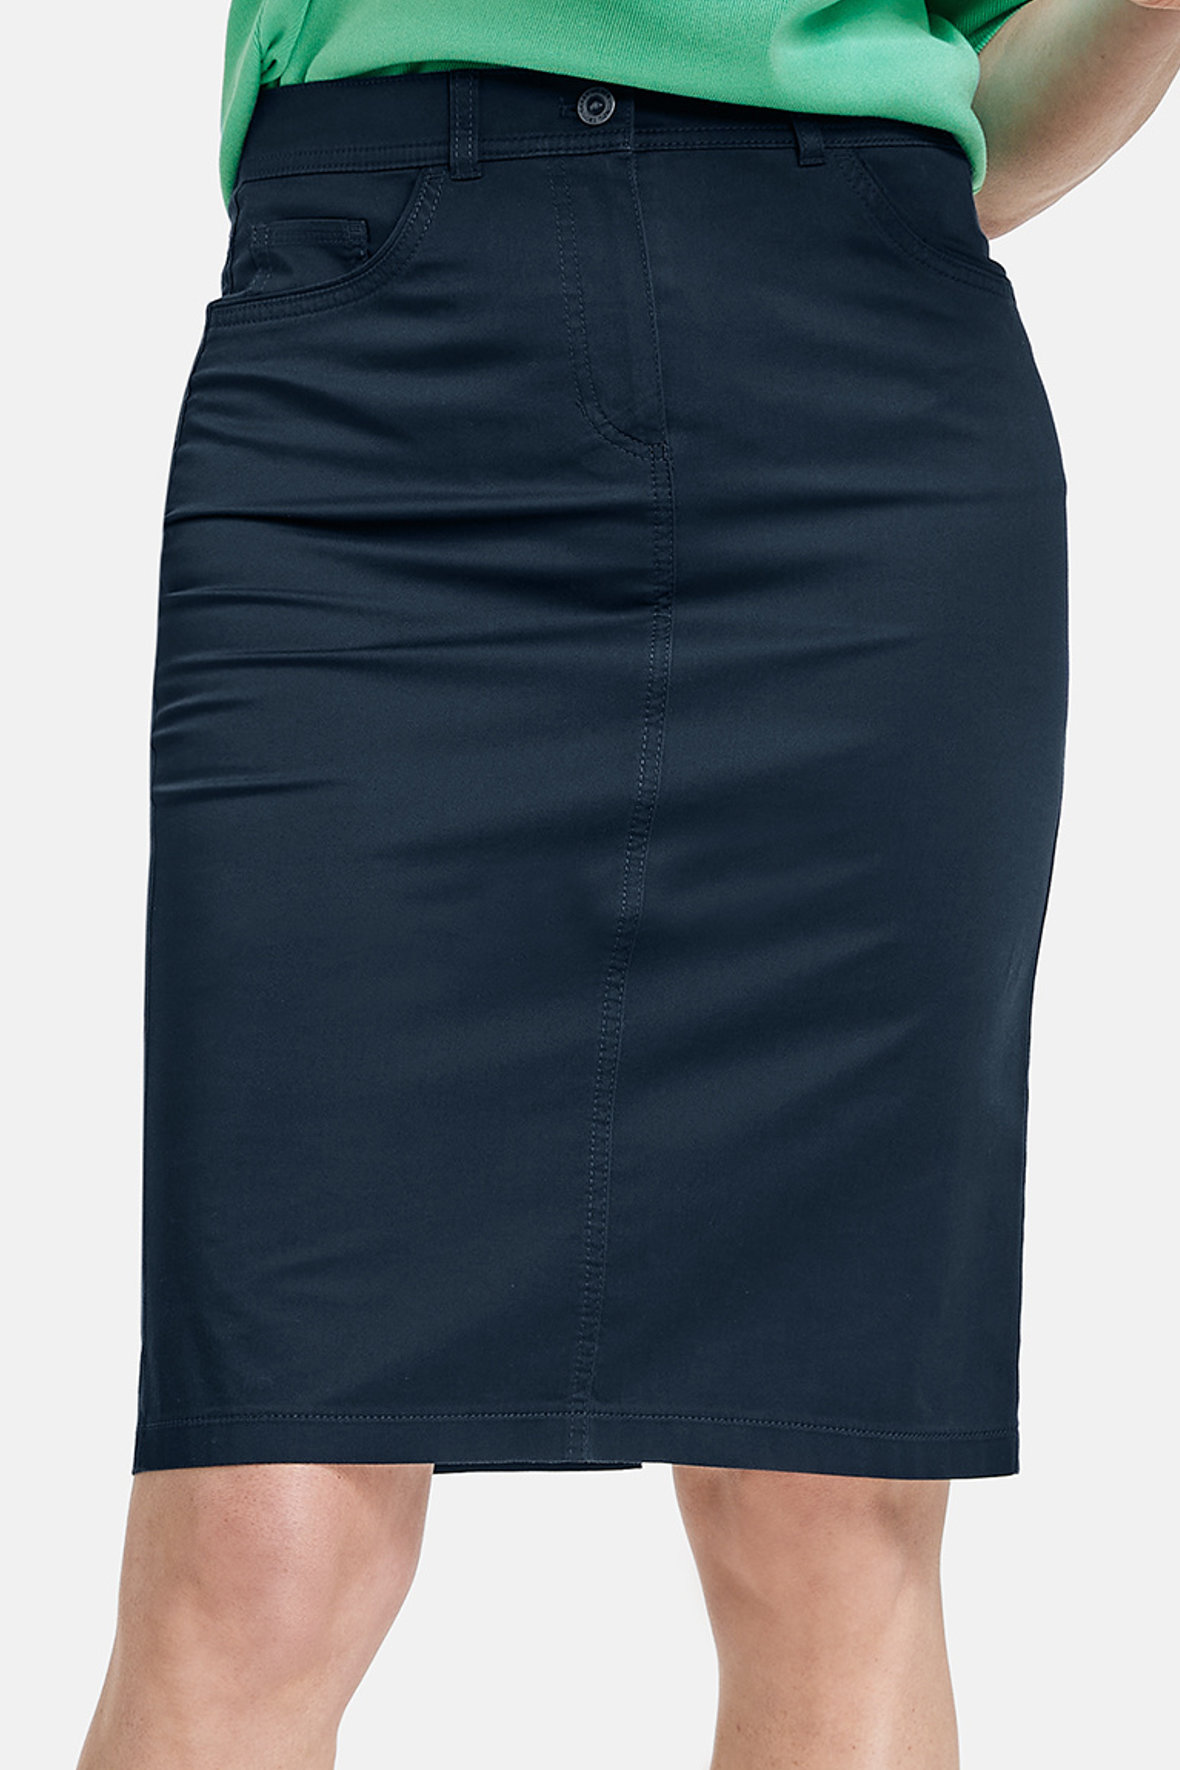 Gerry Weber sommer nederdel med stræk - farver - mørkeblå - Hos Lohse